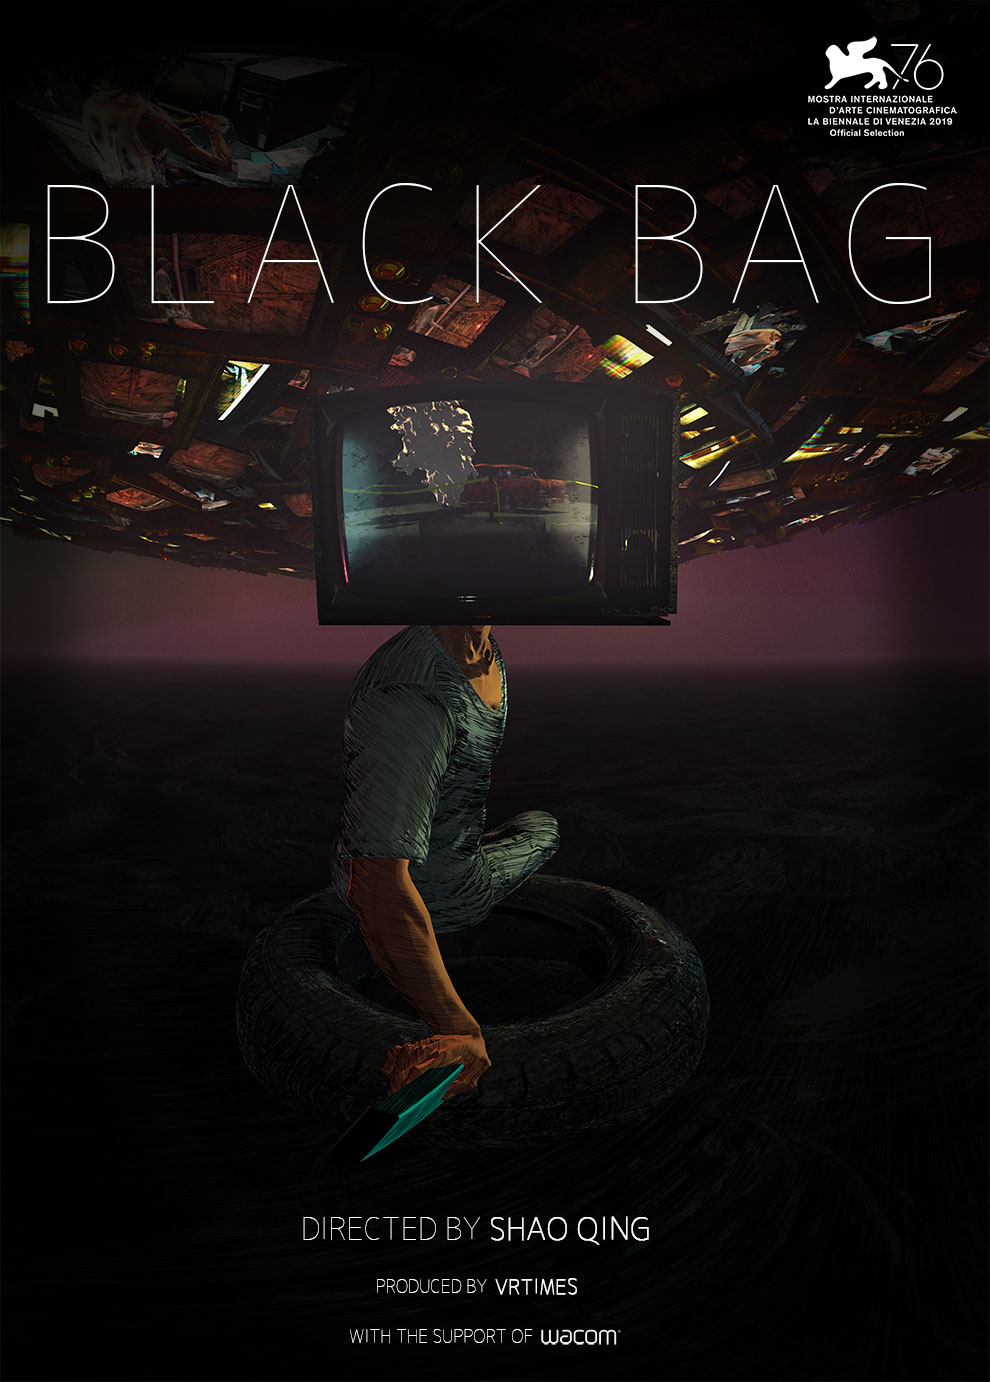 BLACK BAG